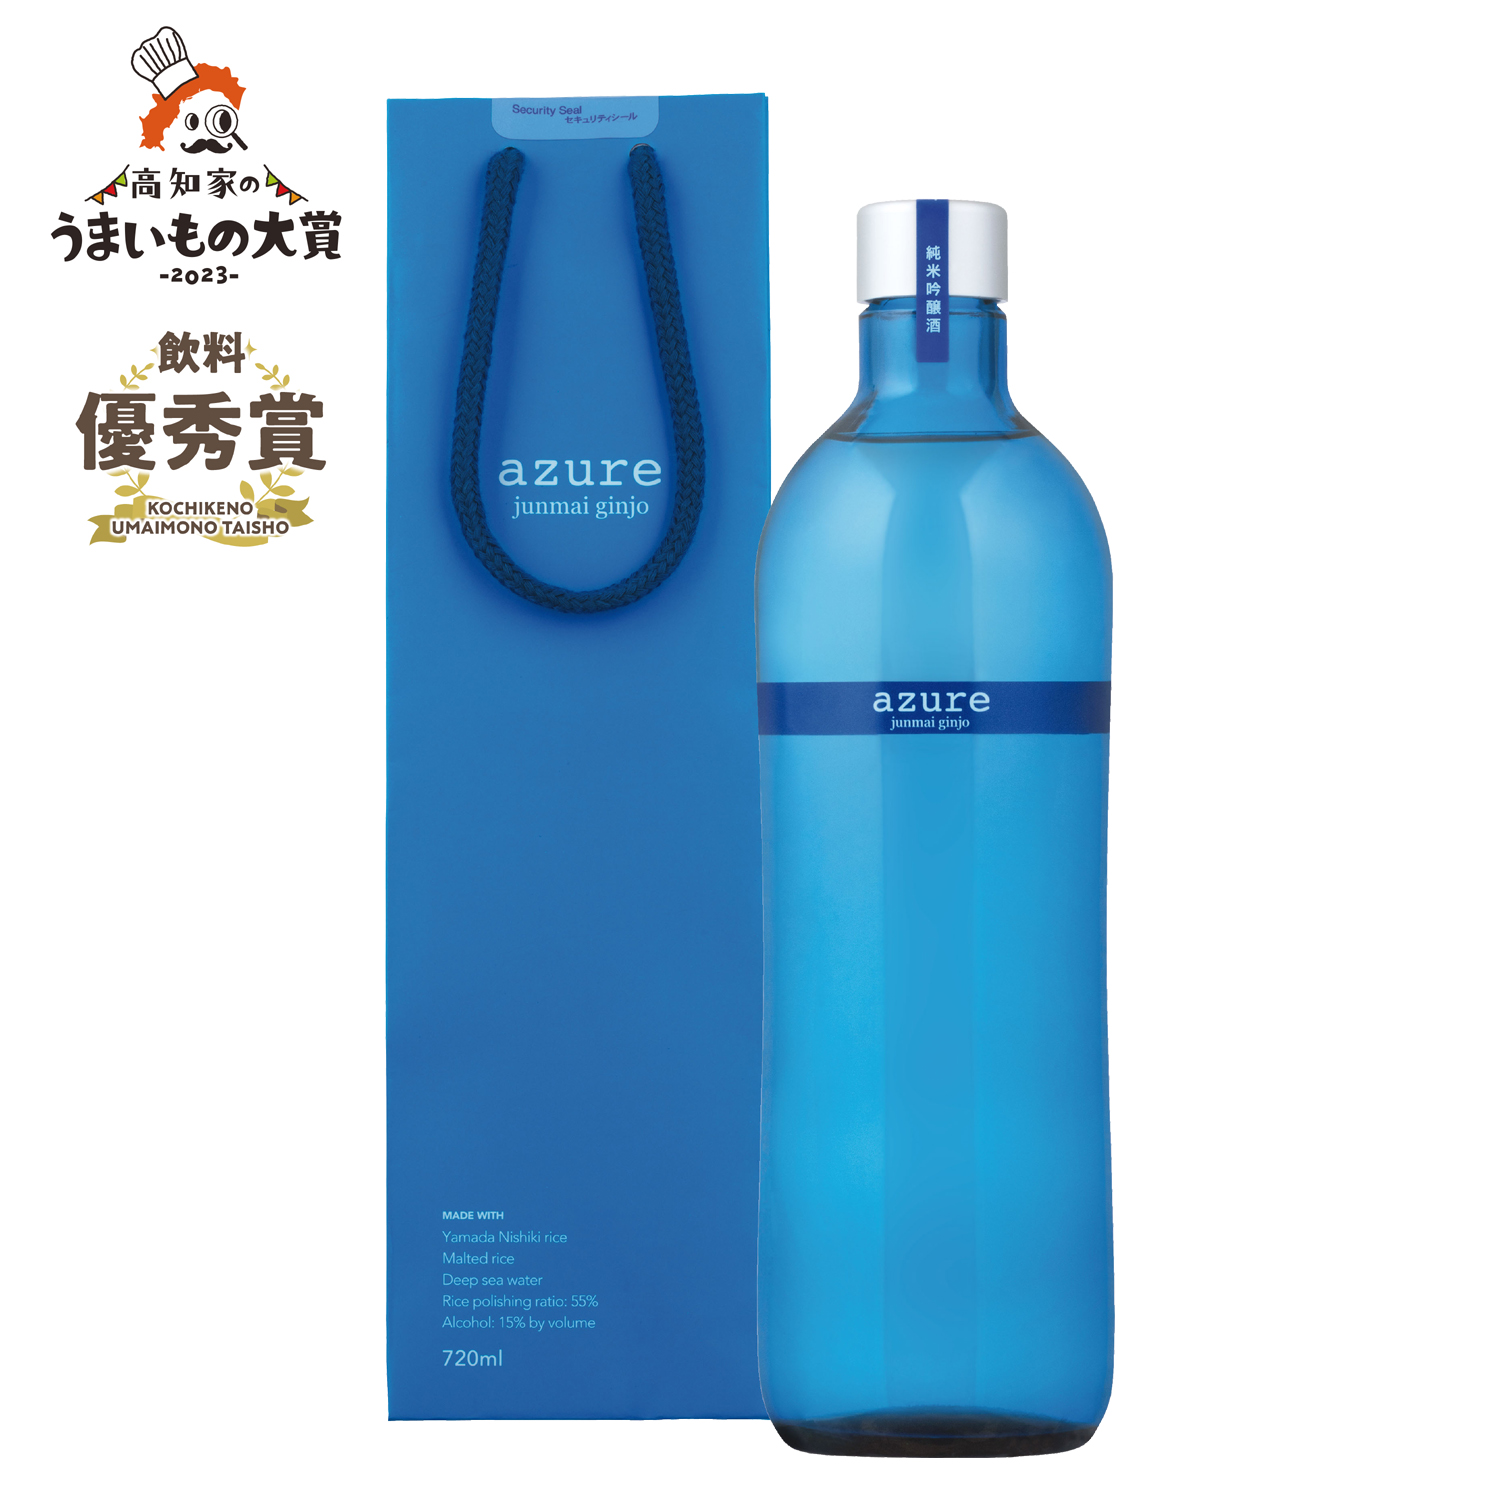 純米吟醸酒 'azure' (アジュール)